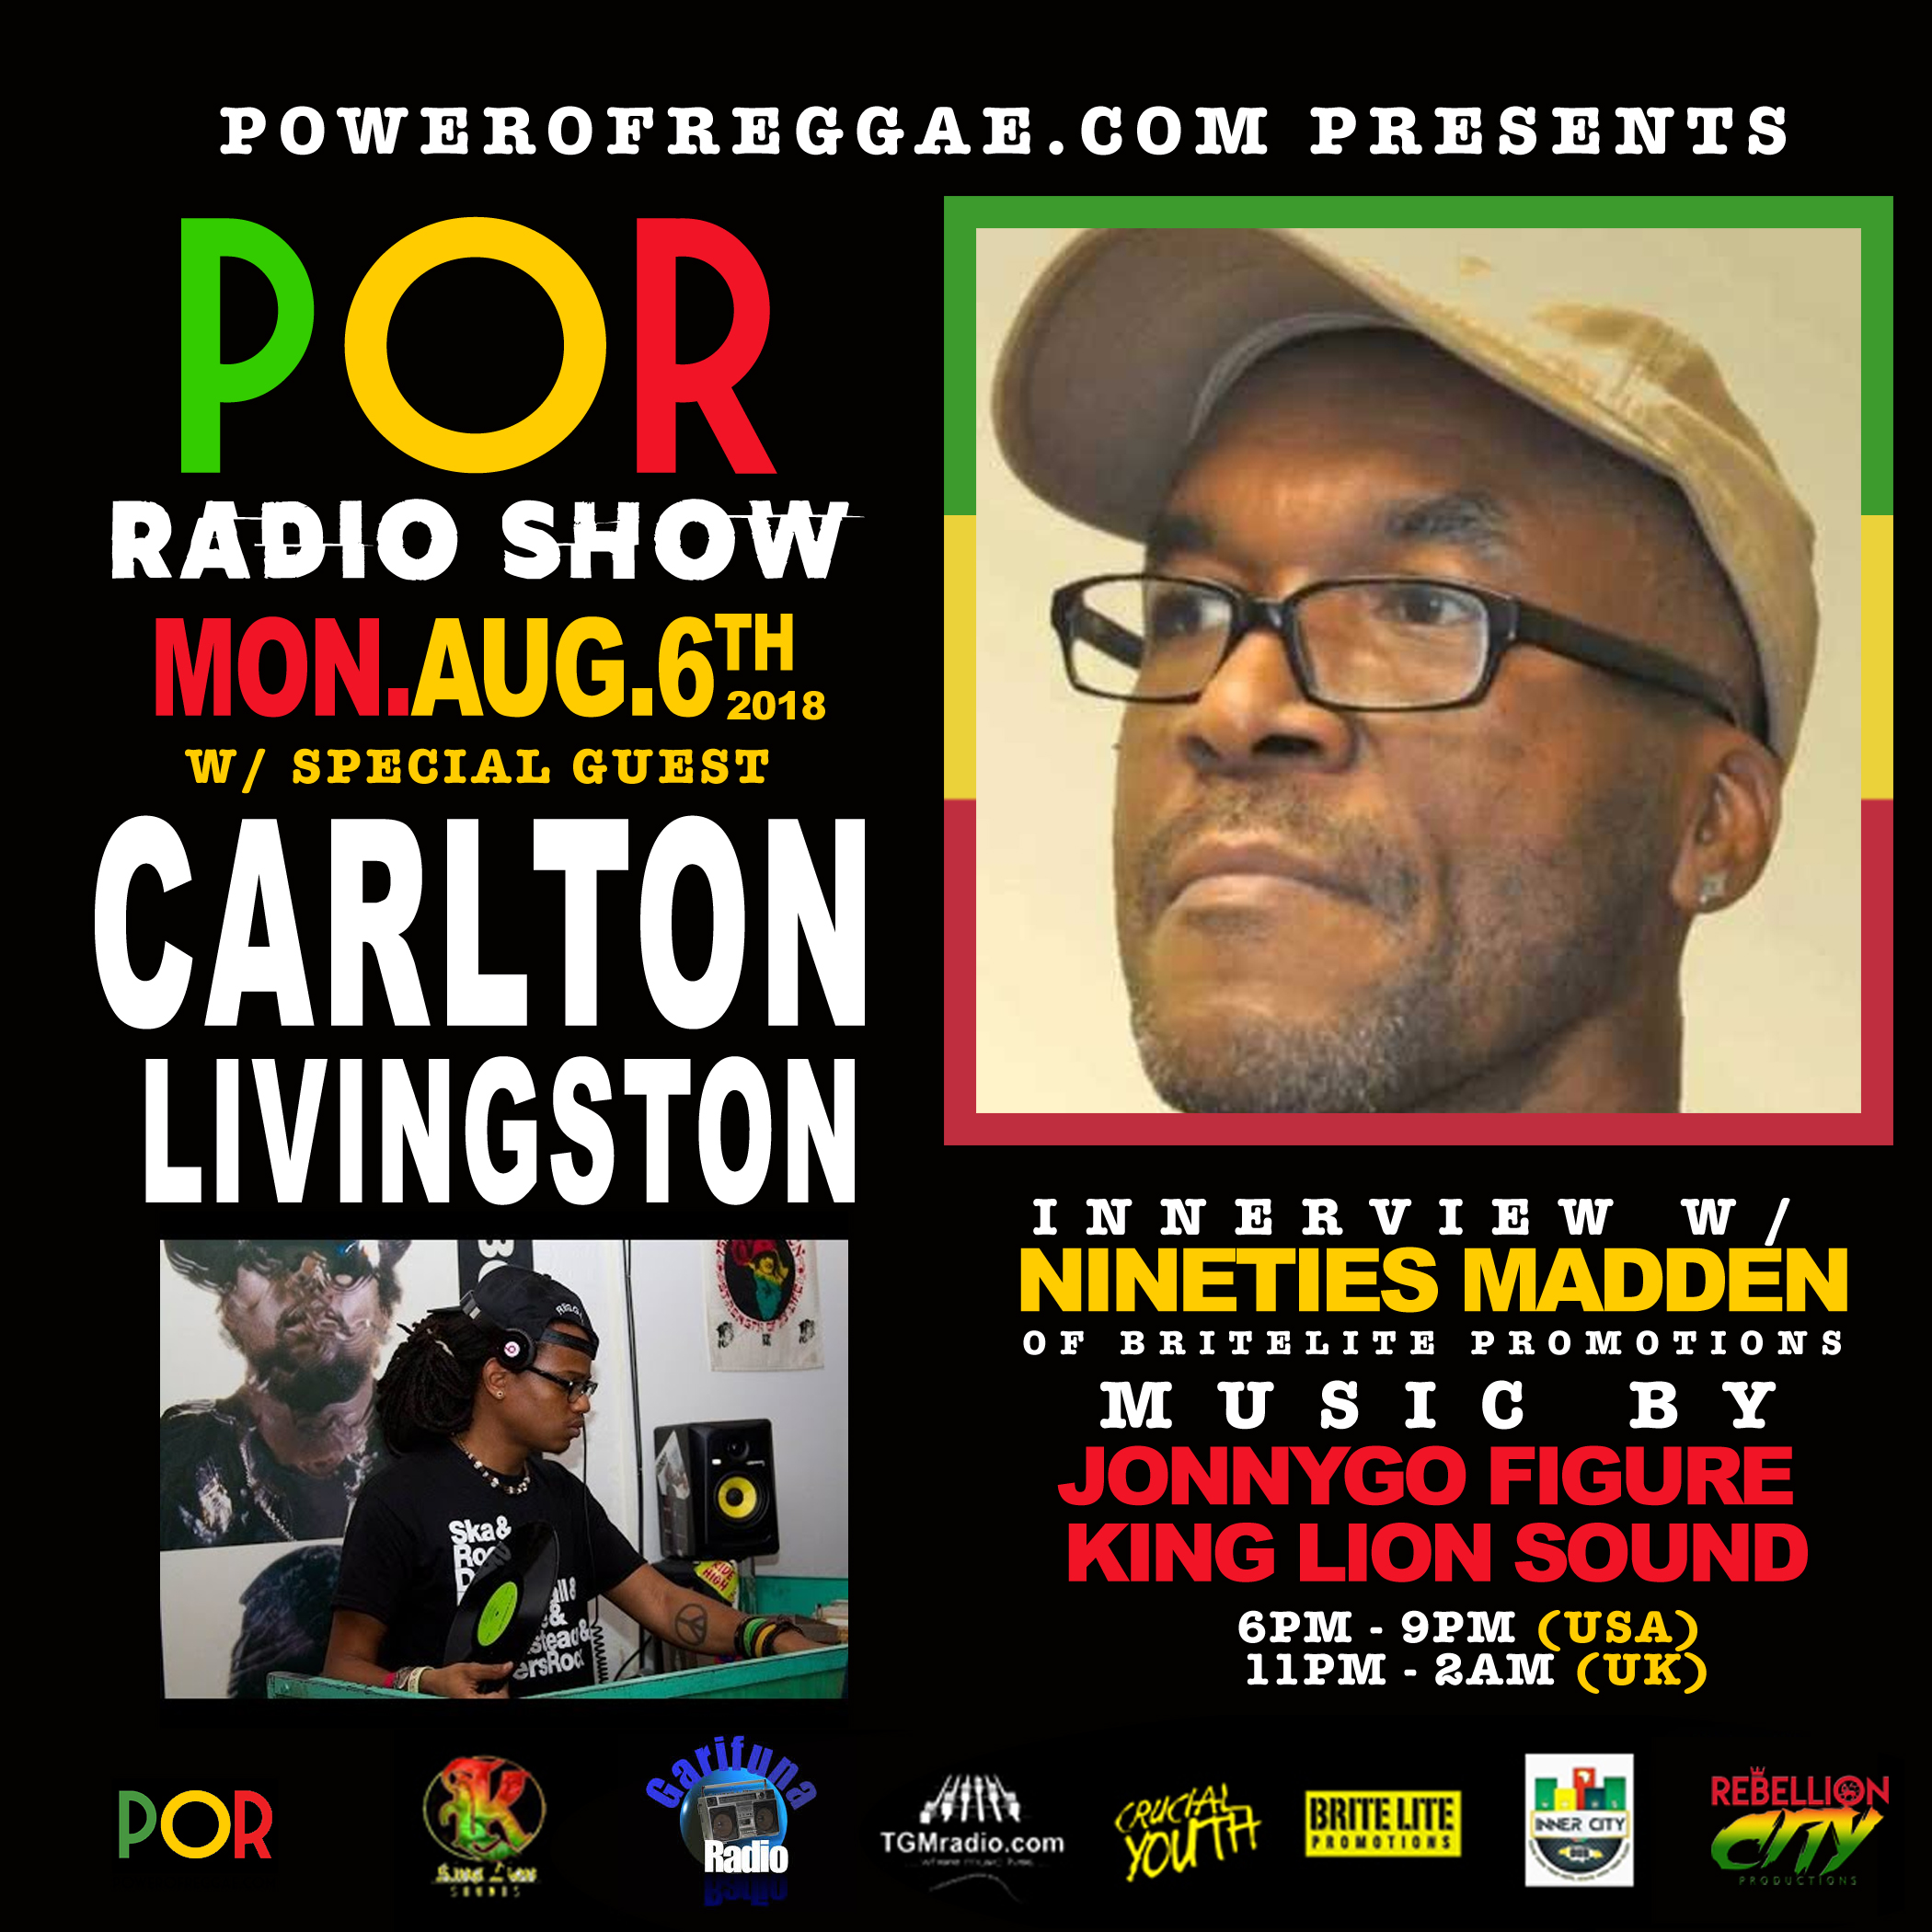 Carlton Livingston Innerview On The Power Of Reggae Radio Show